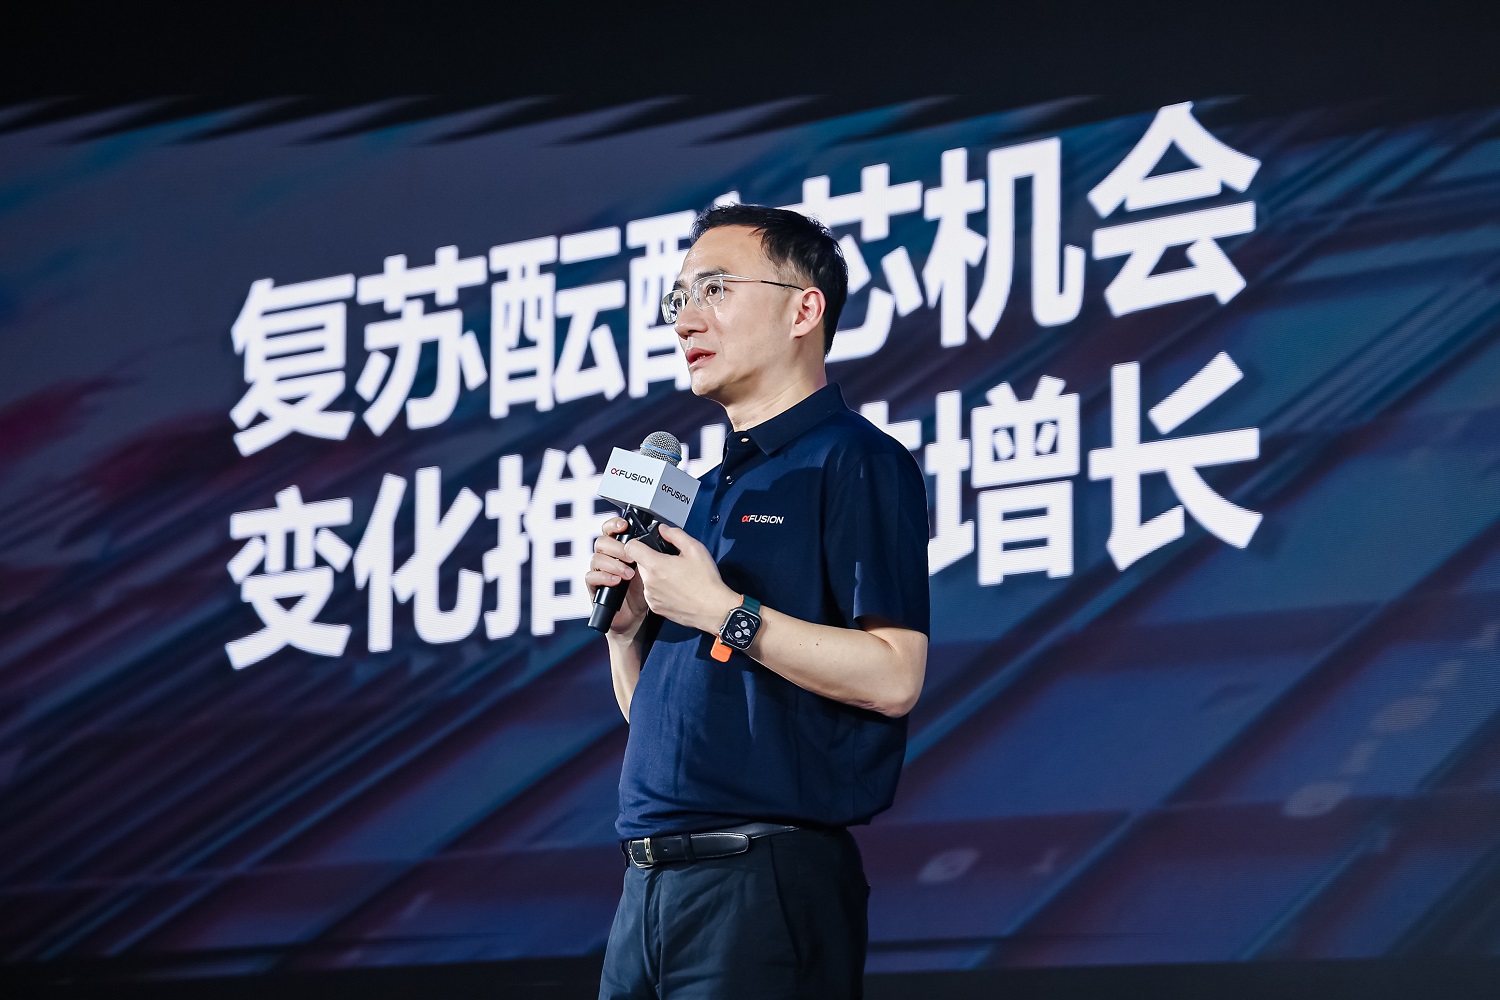 英特尔公司中国区服务器OEM销售总监Kelvin-Liu